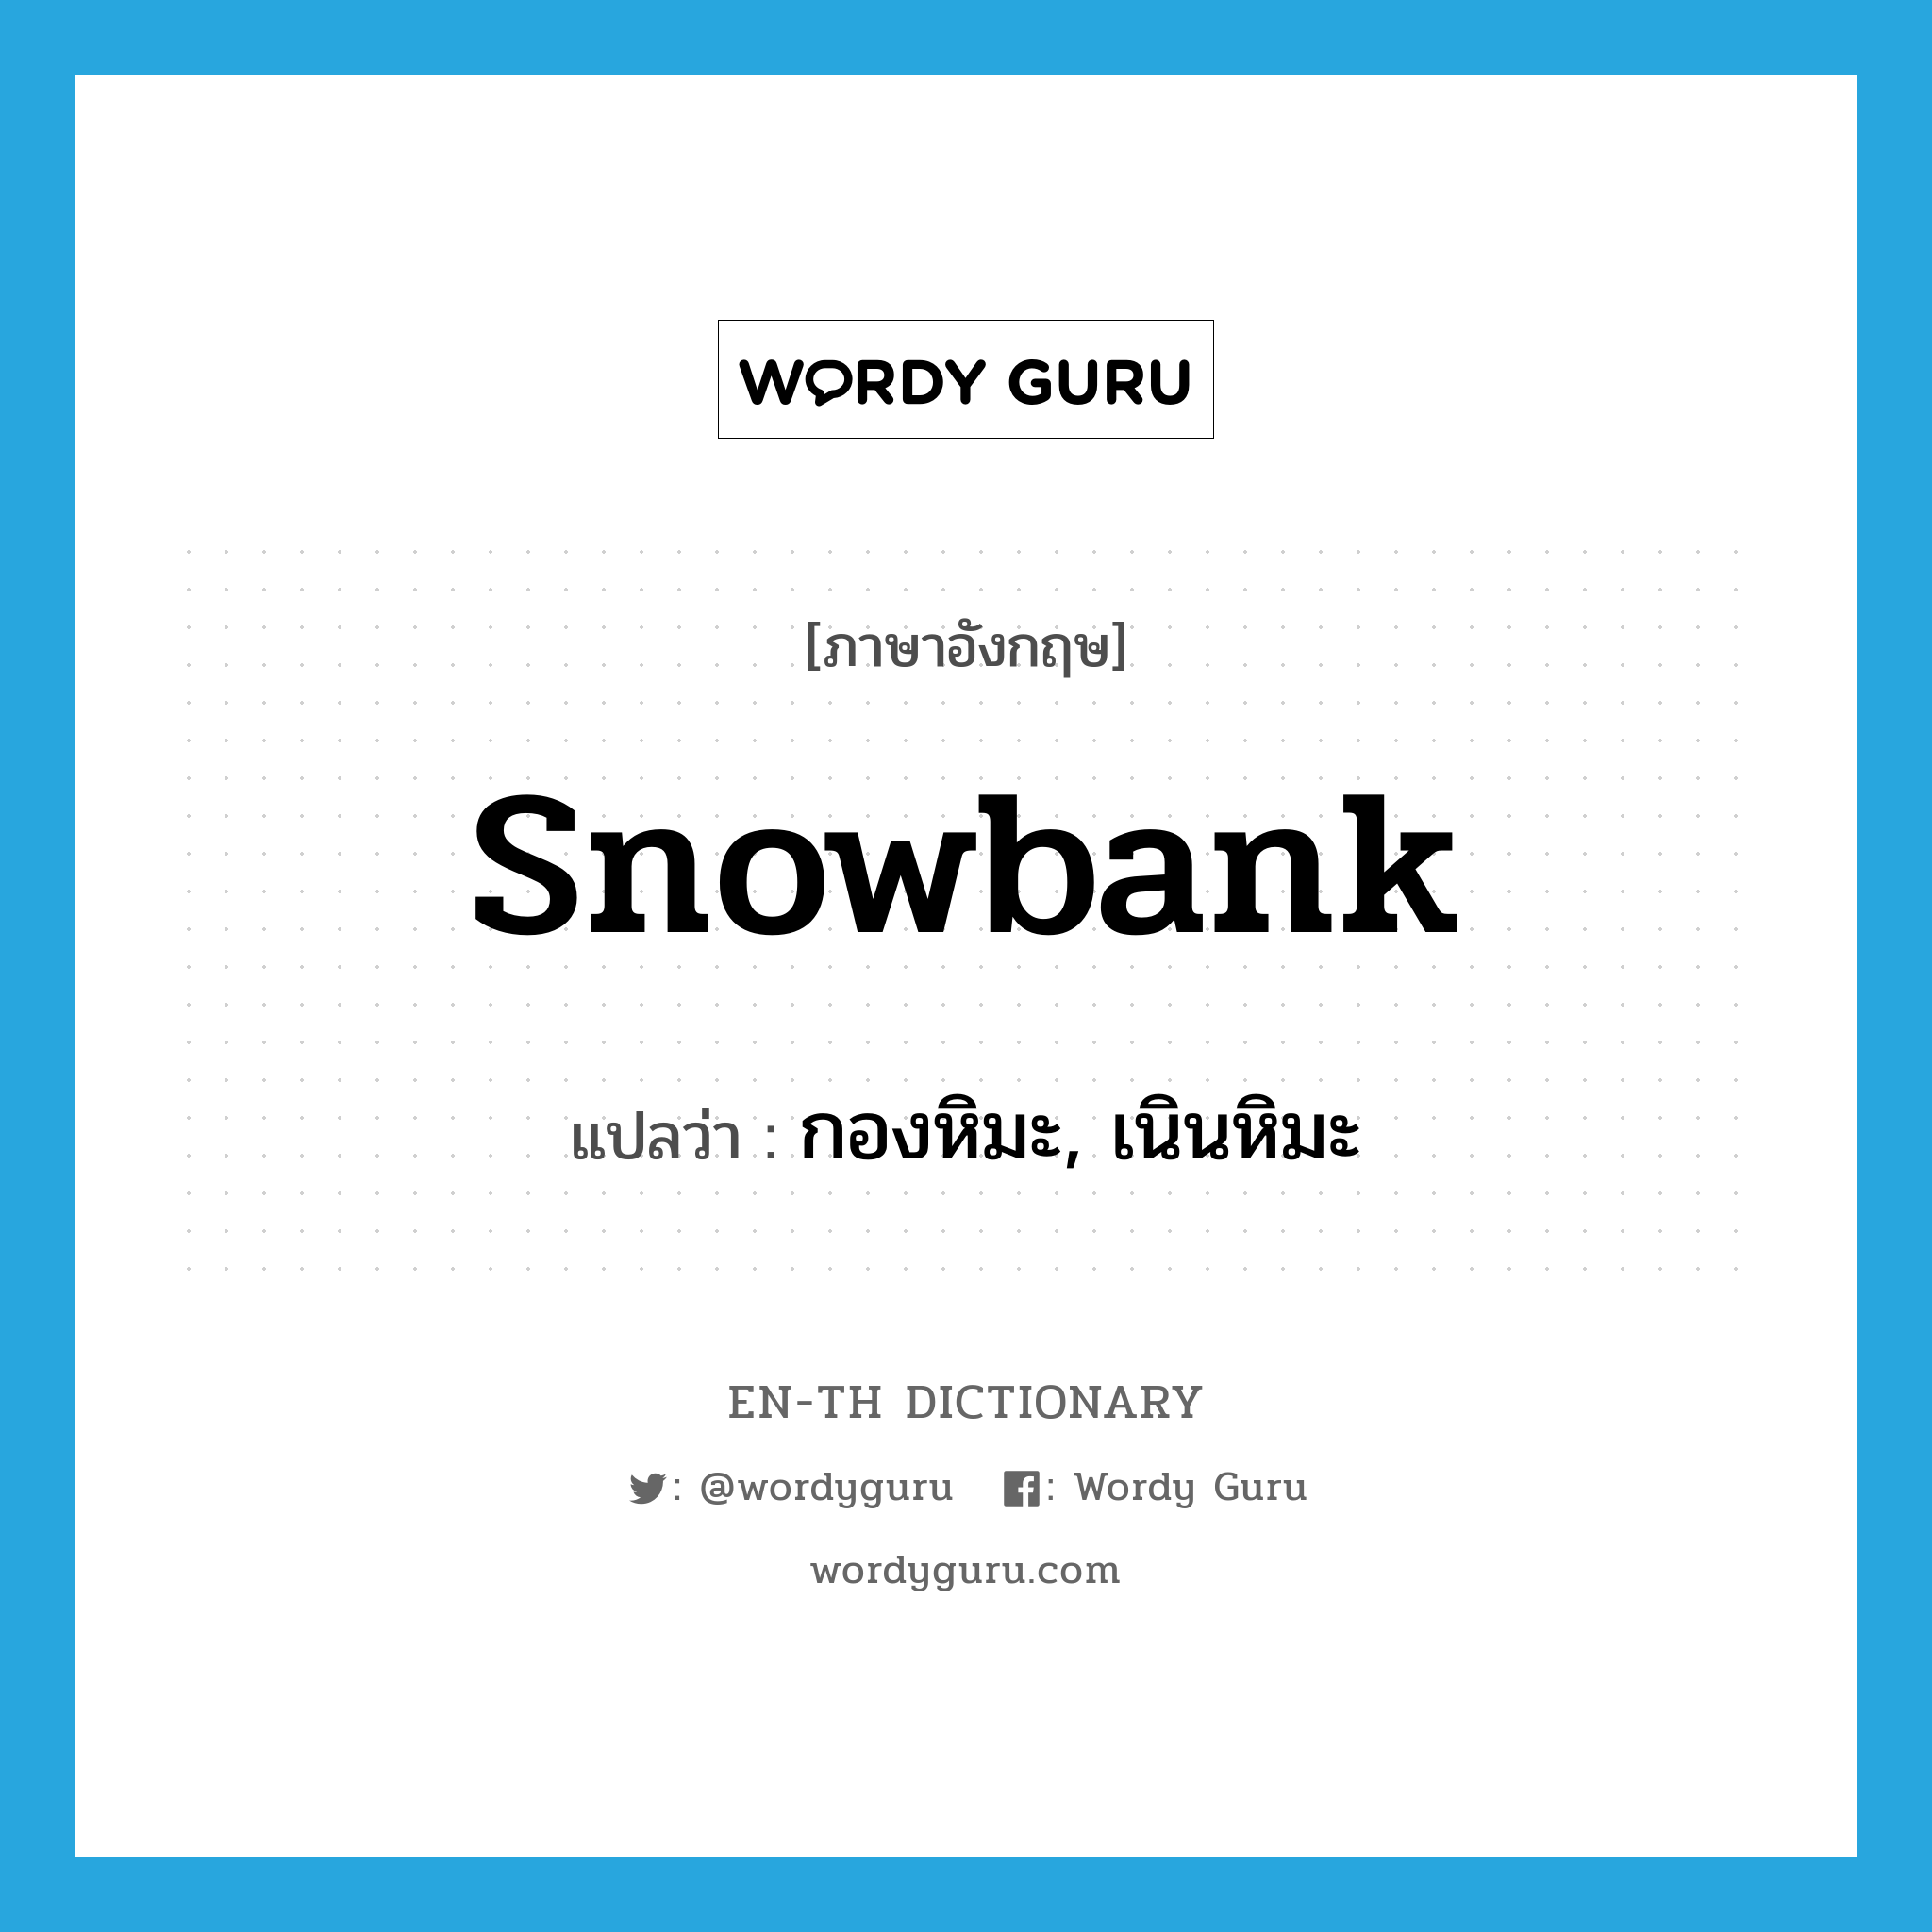 กองหิมะ, เนินหิมะ ภาษาอังกฤษ?, คำศัพท์ภาษาอังกฤษ กองหิมะ, เนินหิมะ แปลว่า snowbank ประเภท N หมวด N